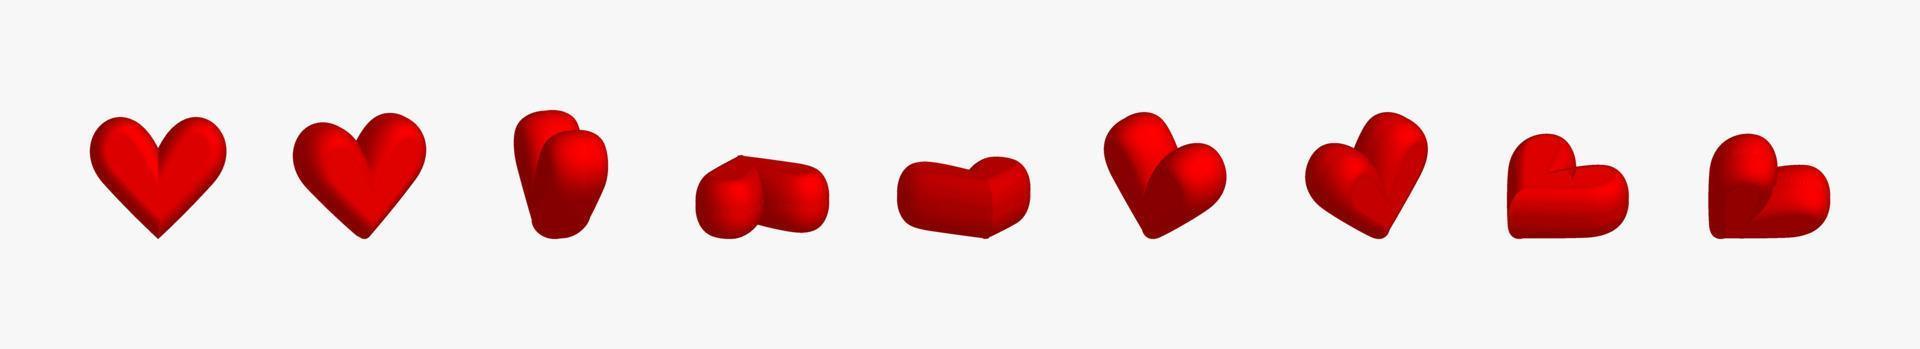 insieme dell'icona dei cuori. simbolo di amore di san valentino, icona del cuore 3d anteriore e vista angolare di rotazione. vettore